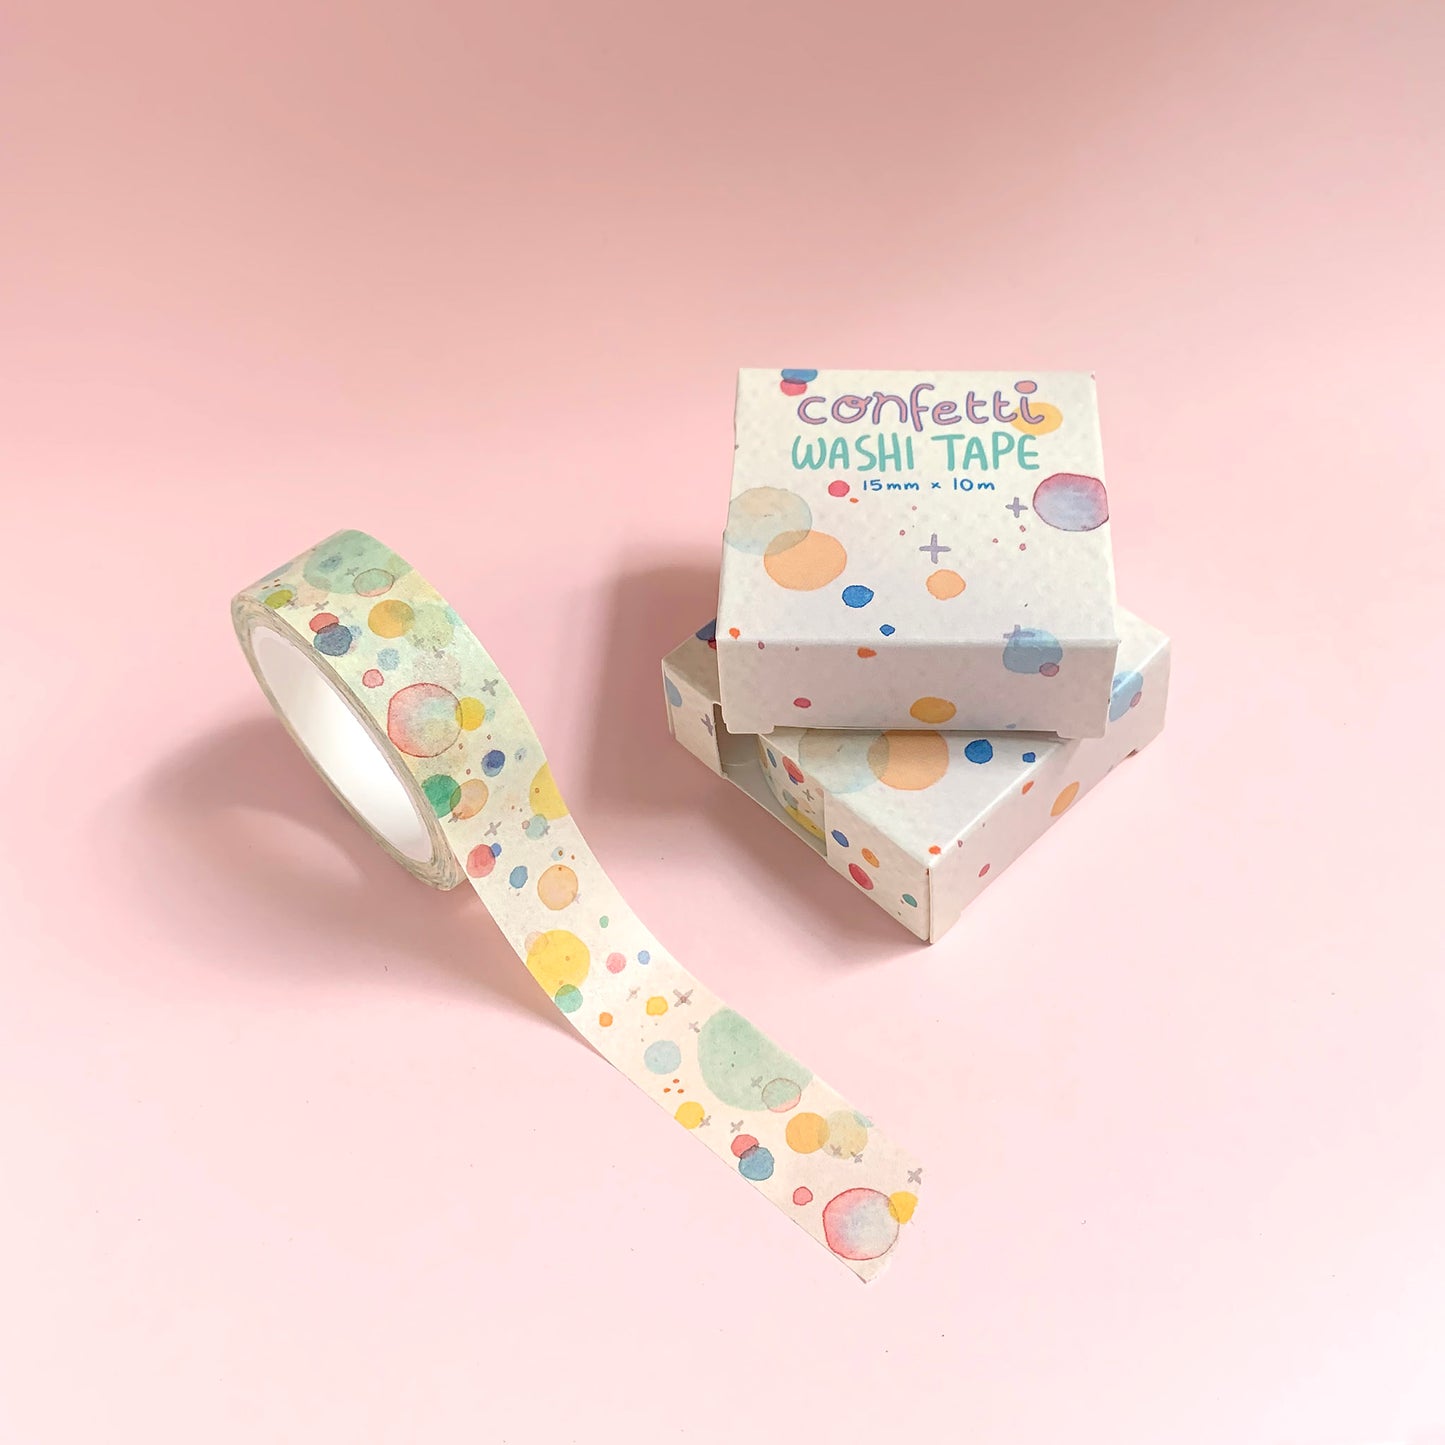 Confetti - Washi Tape